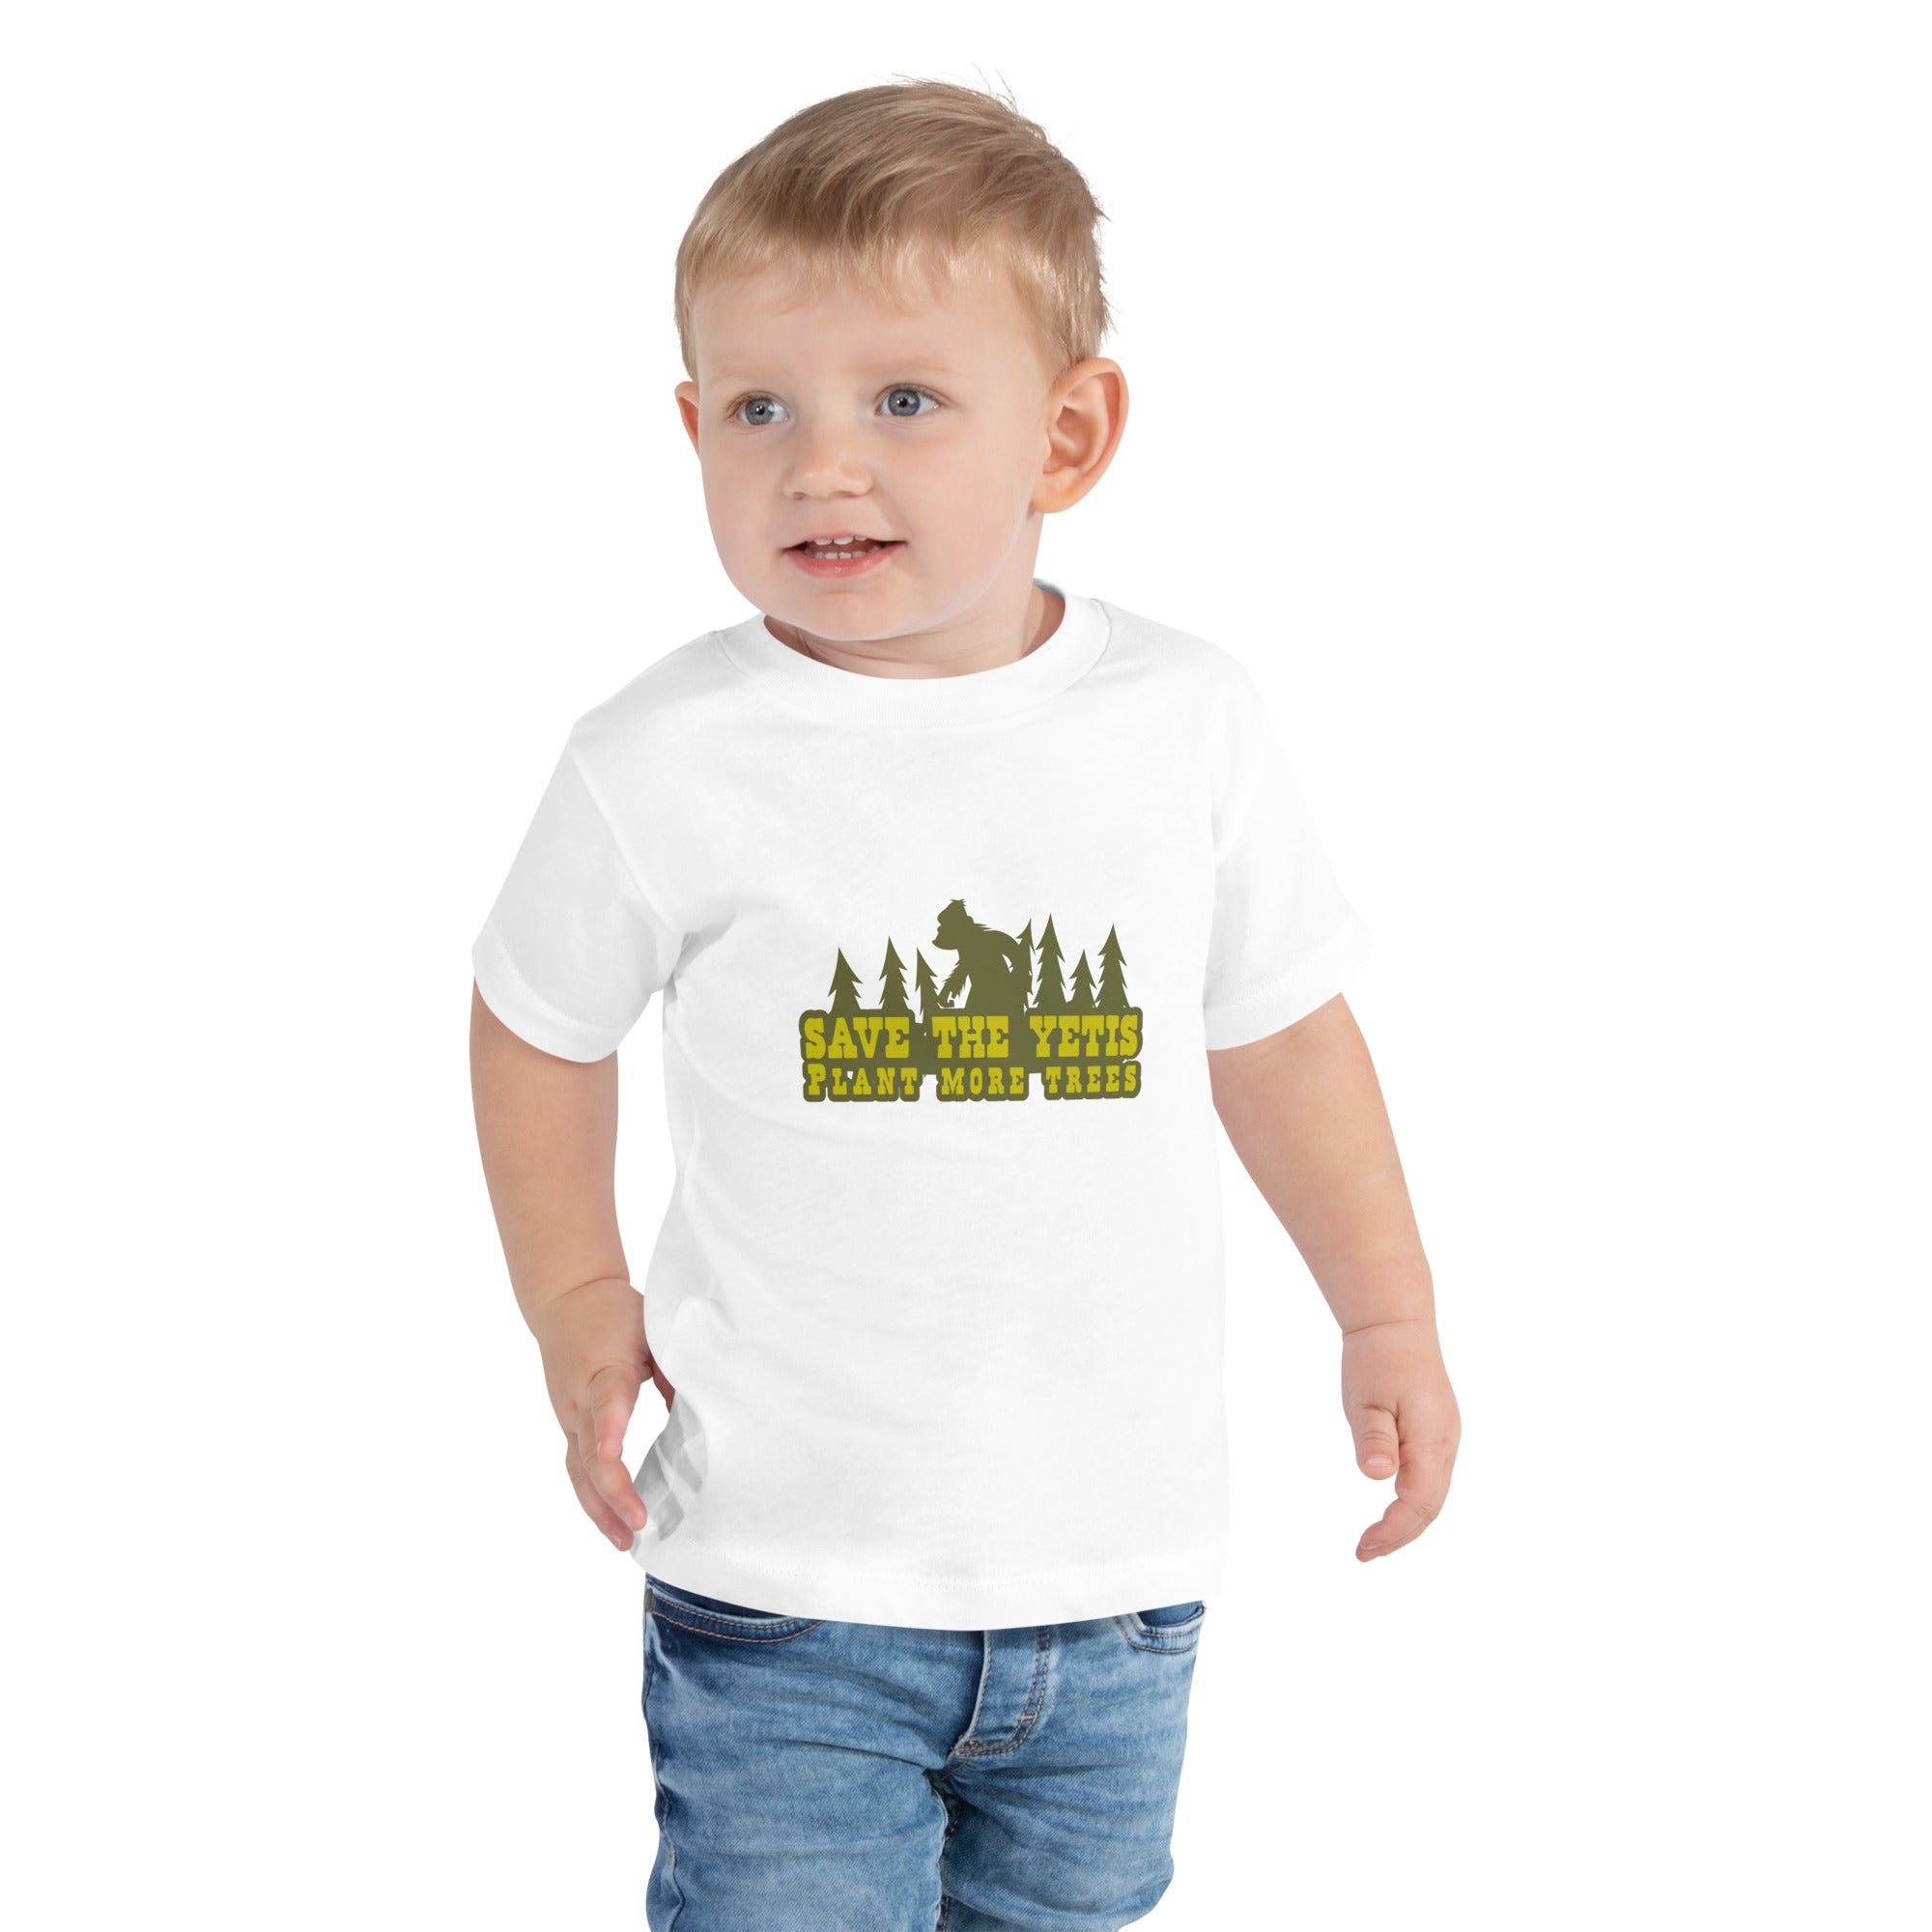 T-shirt pour enfant en bas âge Save the Yetis Plant more Trees